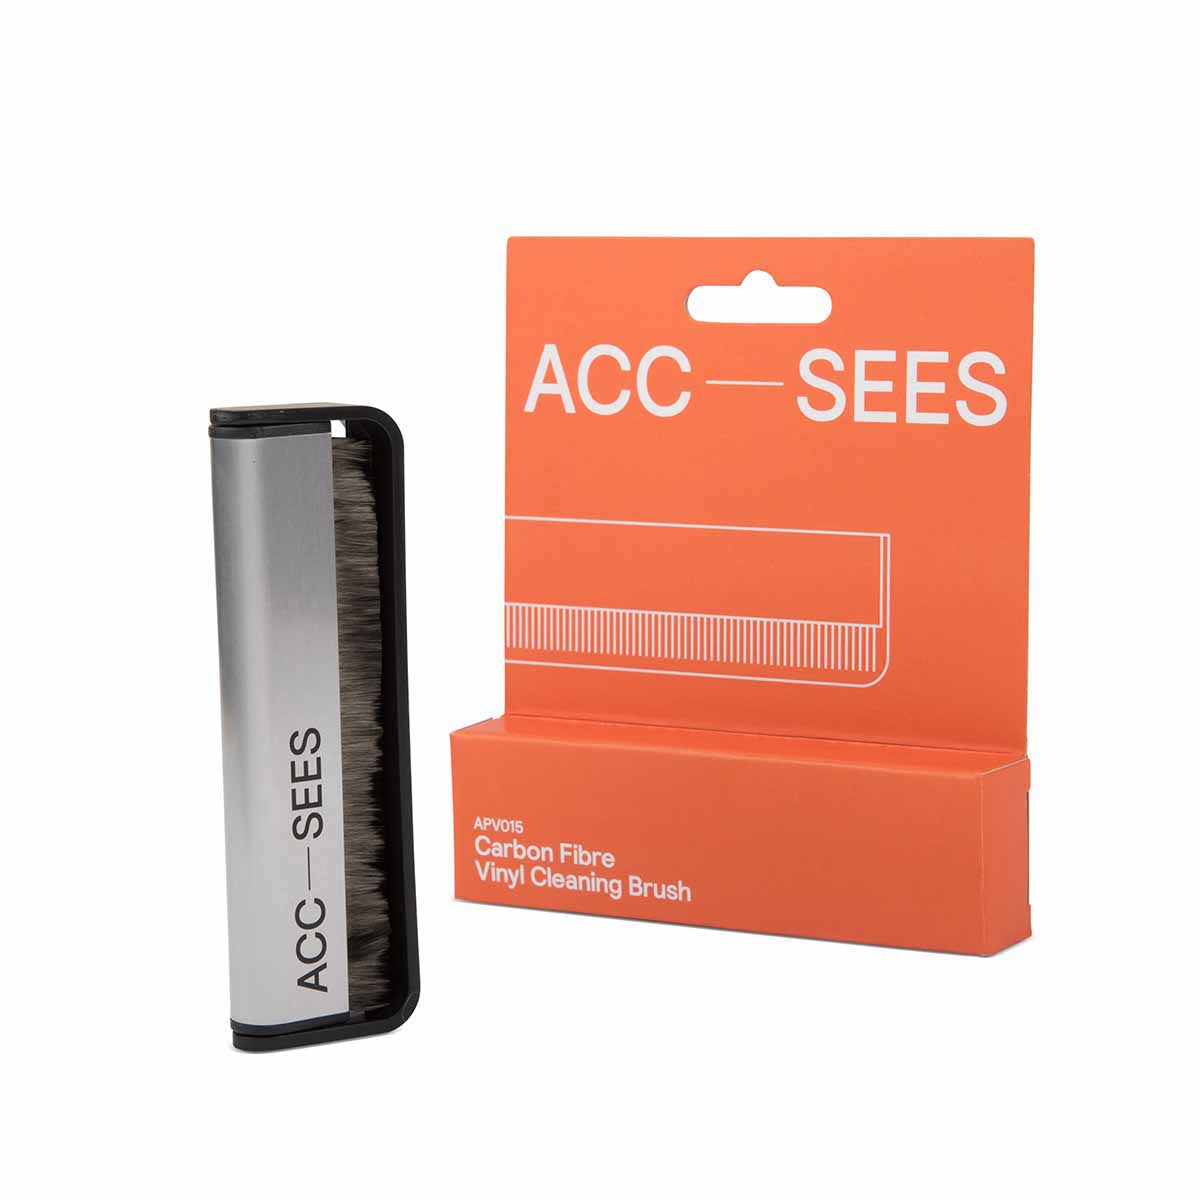 ACC-SEES APV015 Carbon Fibre Vinyl Cleaner Brush